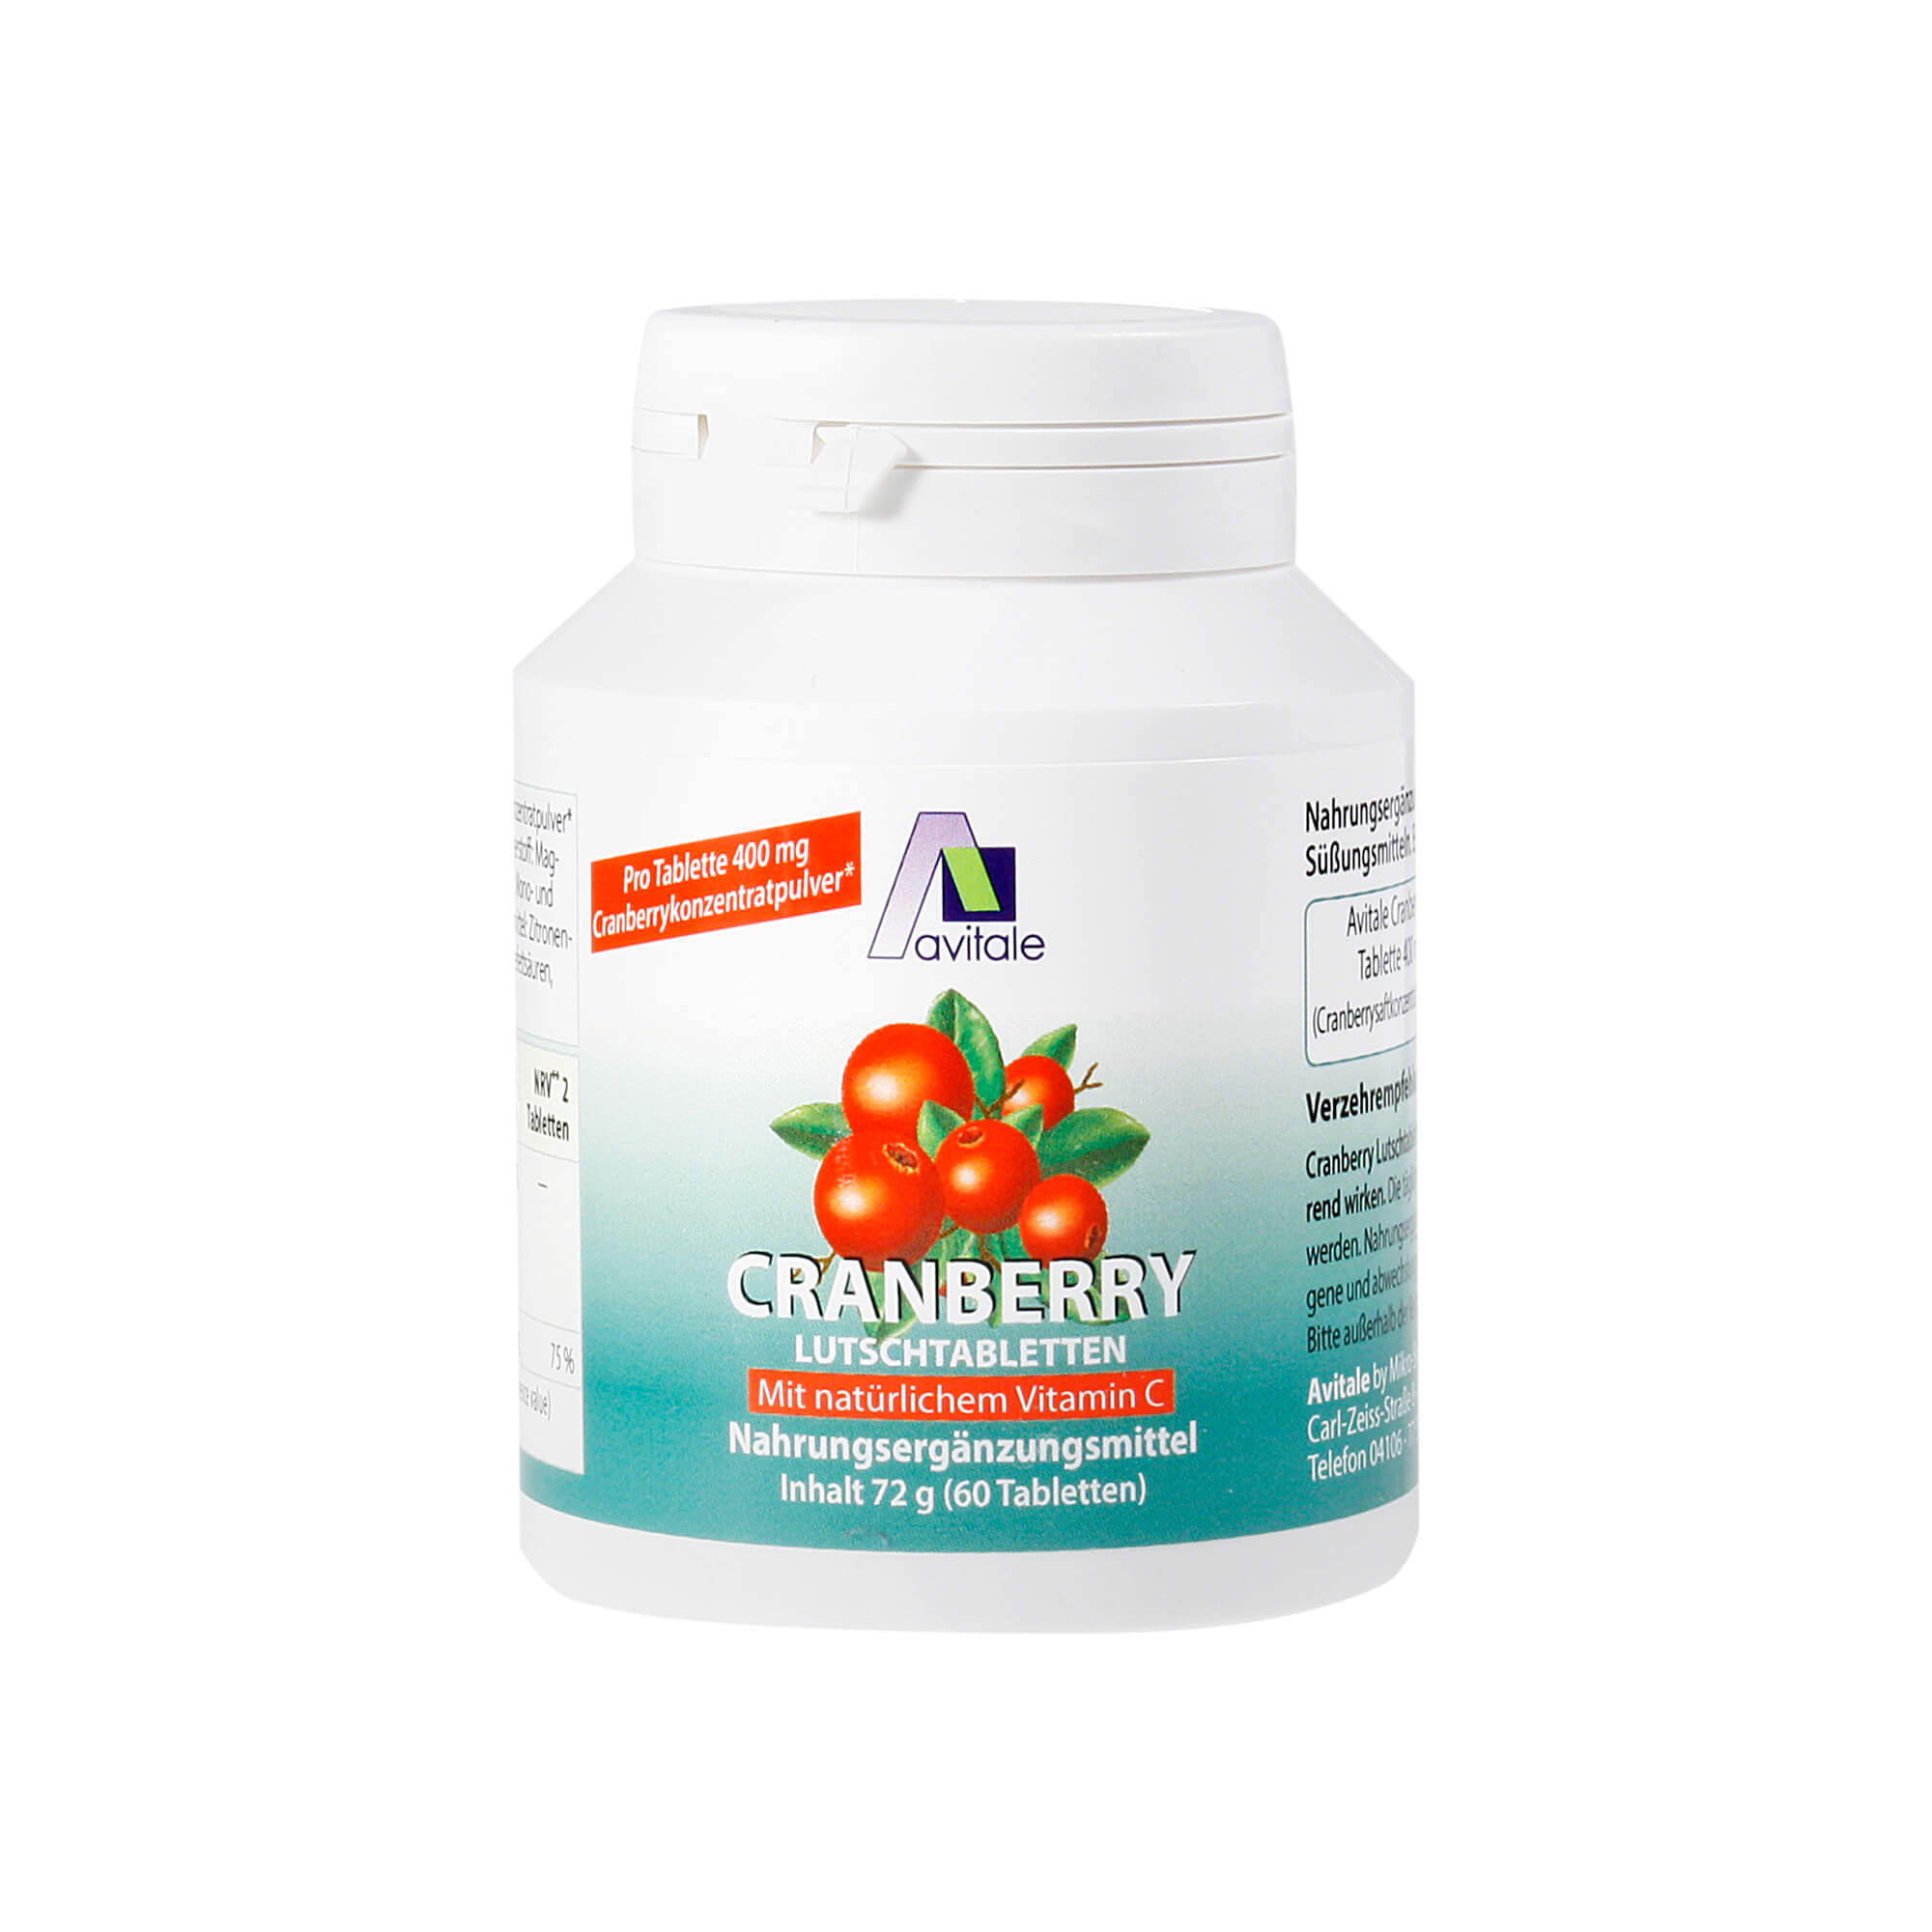 Nahrungsergänzungsmittel mit 400 mg Cranberrykonzentratpulver und Süßungsmittel.